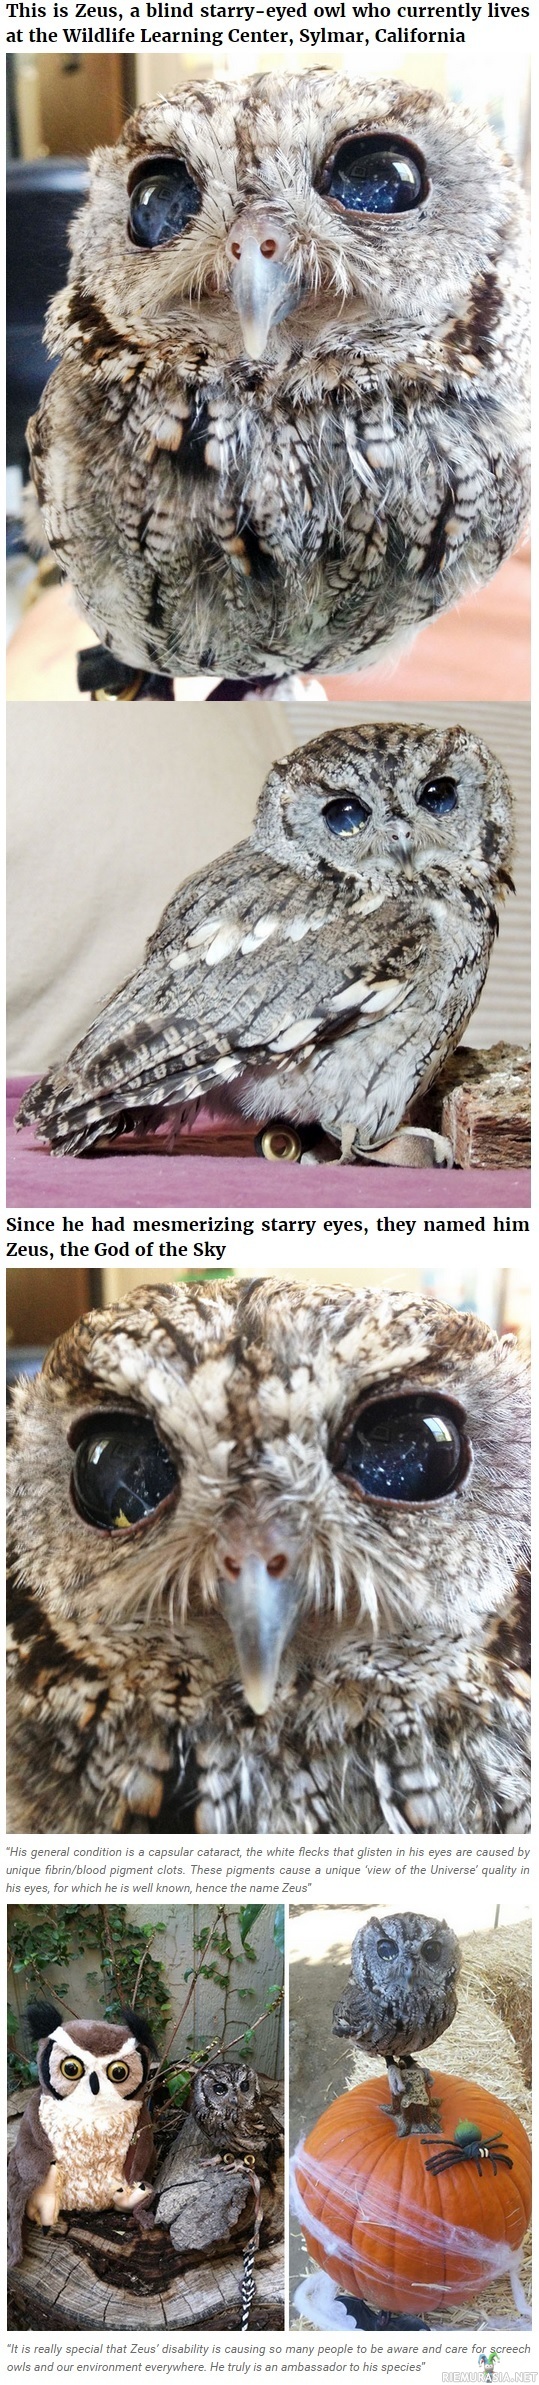 Zeus pöllö